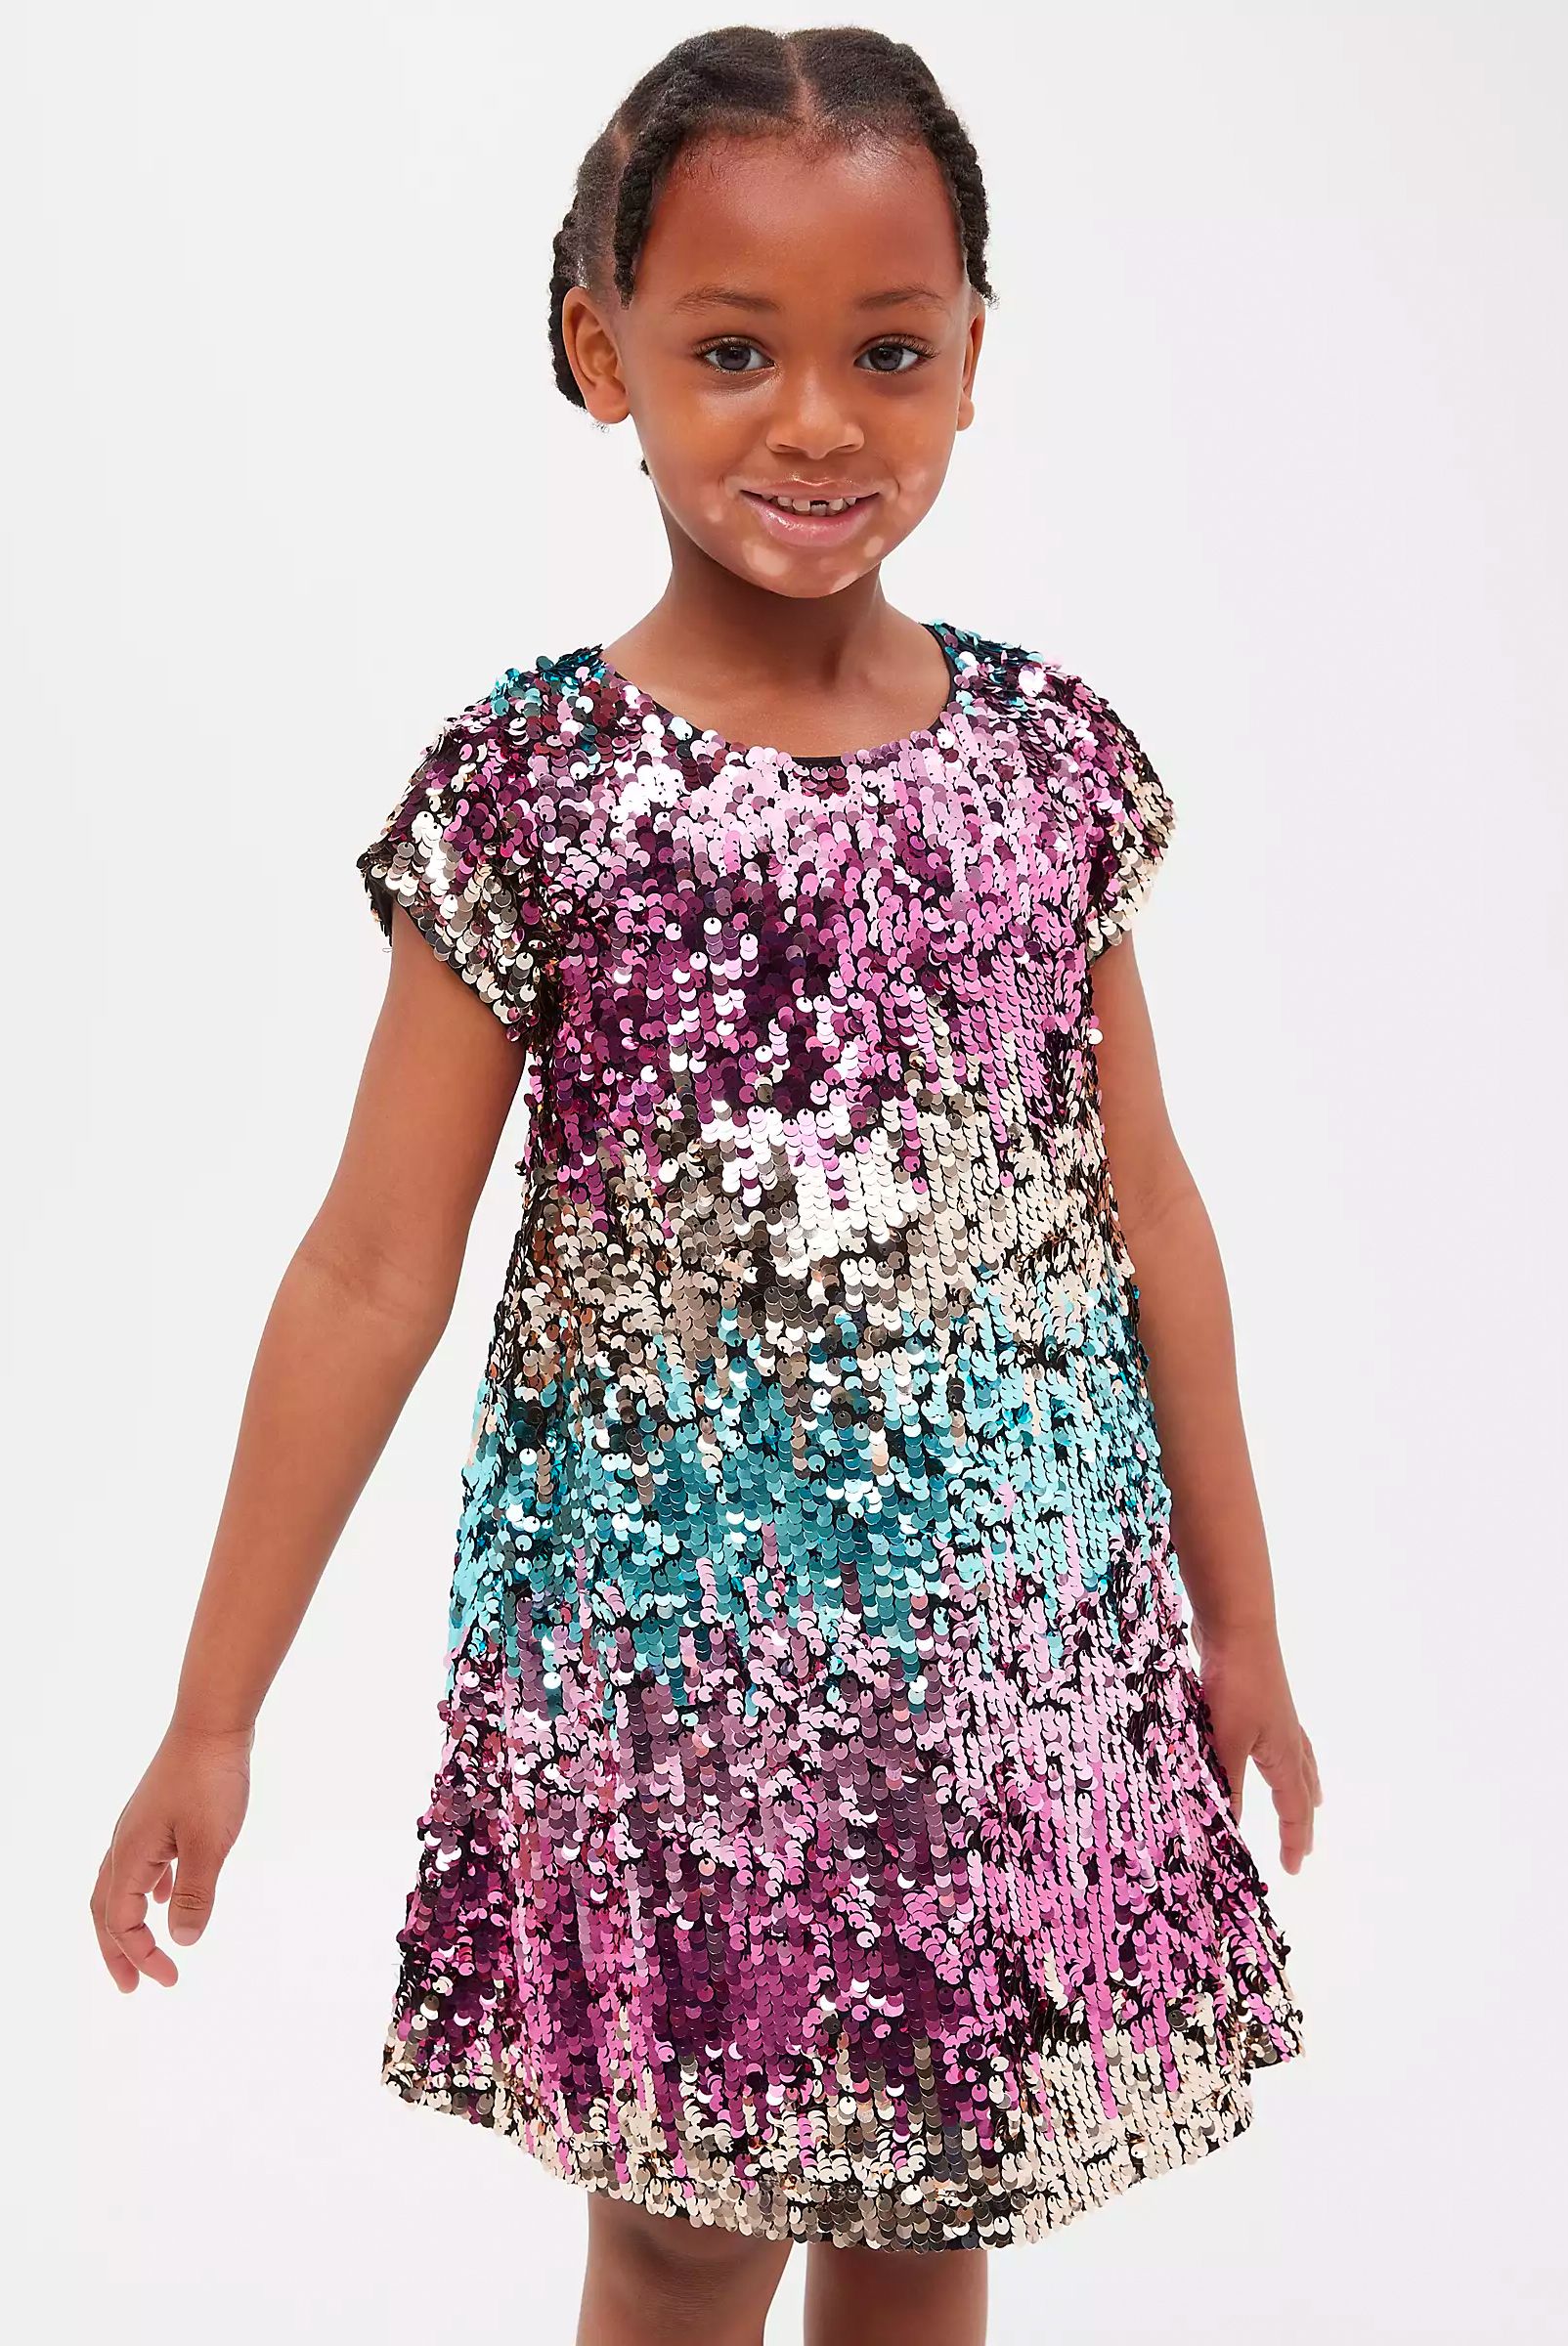 Kids Ombre Sequin Dress, £32